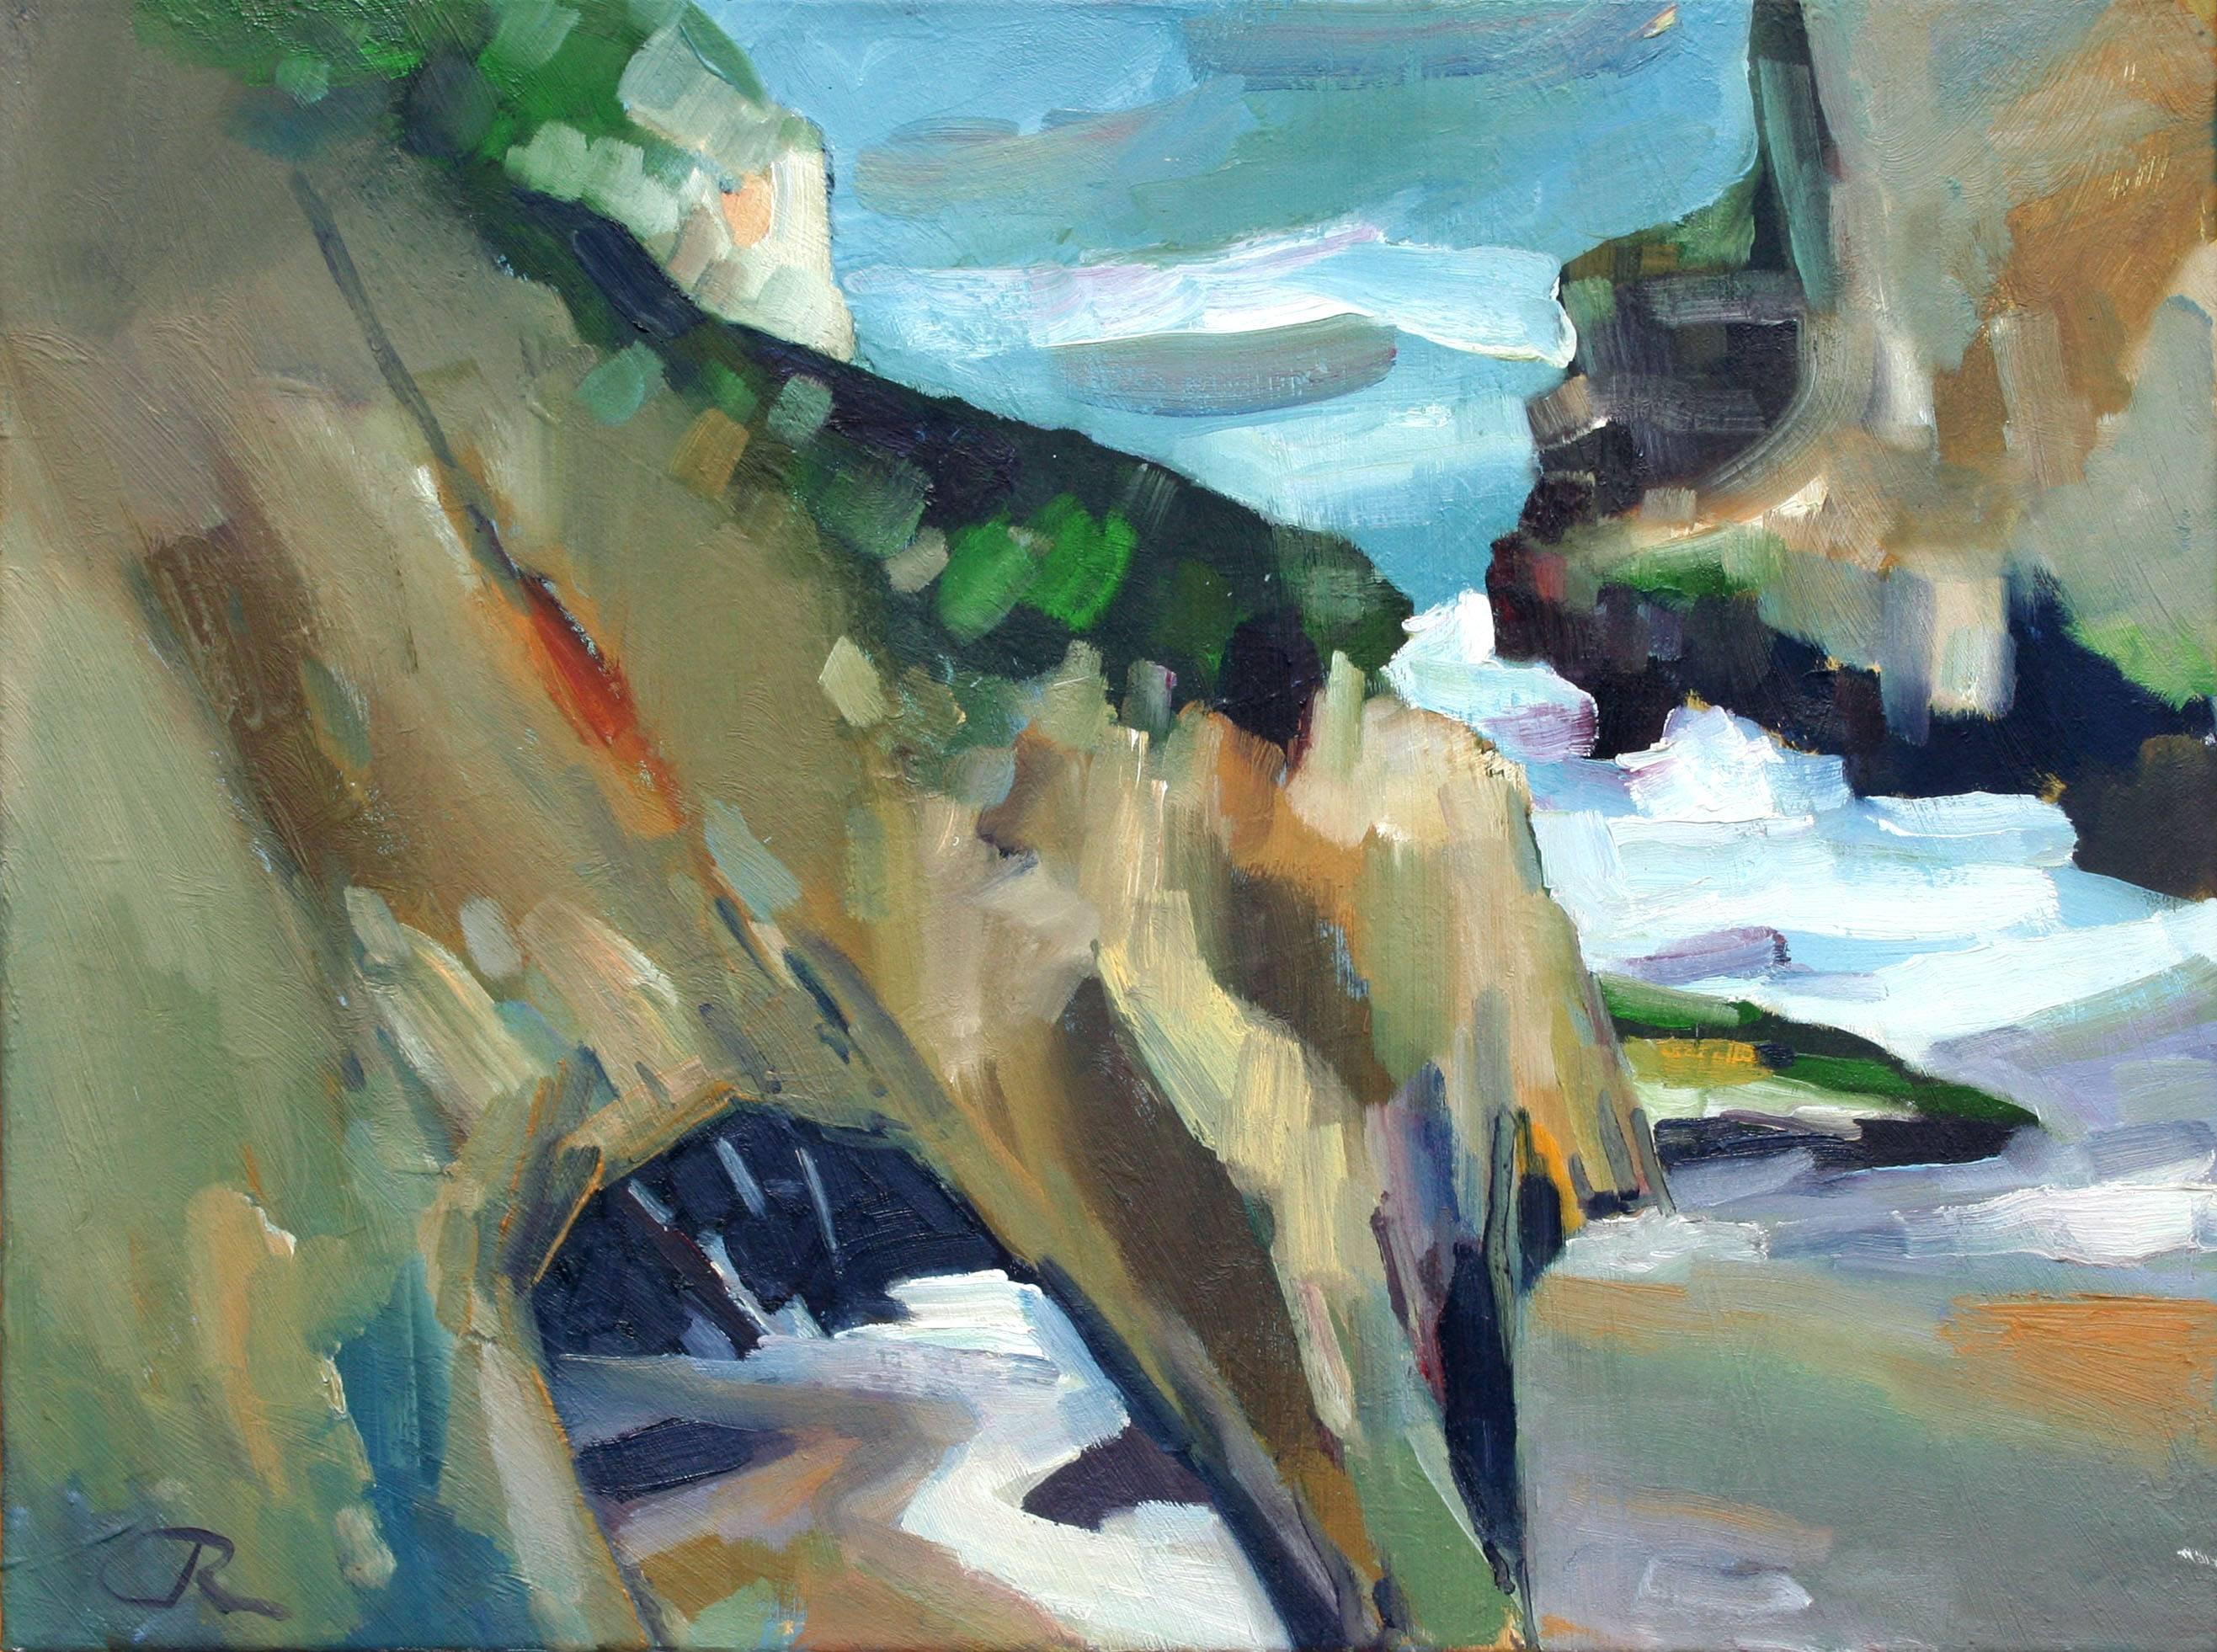 Sea Cave-Landschaft, Expressionistische Seelandschaft – Painting von John Crawford